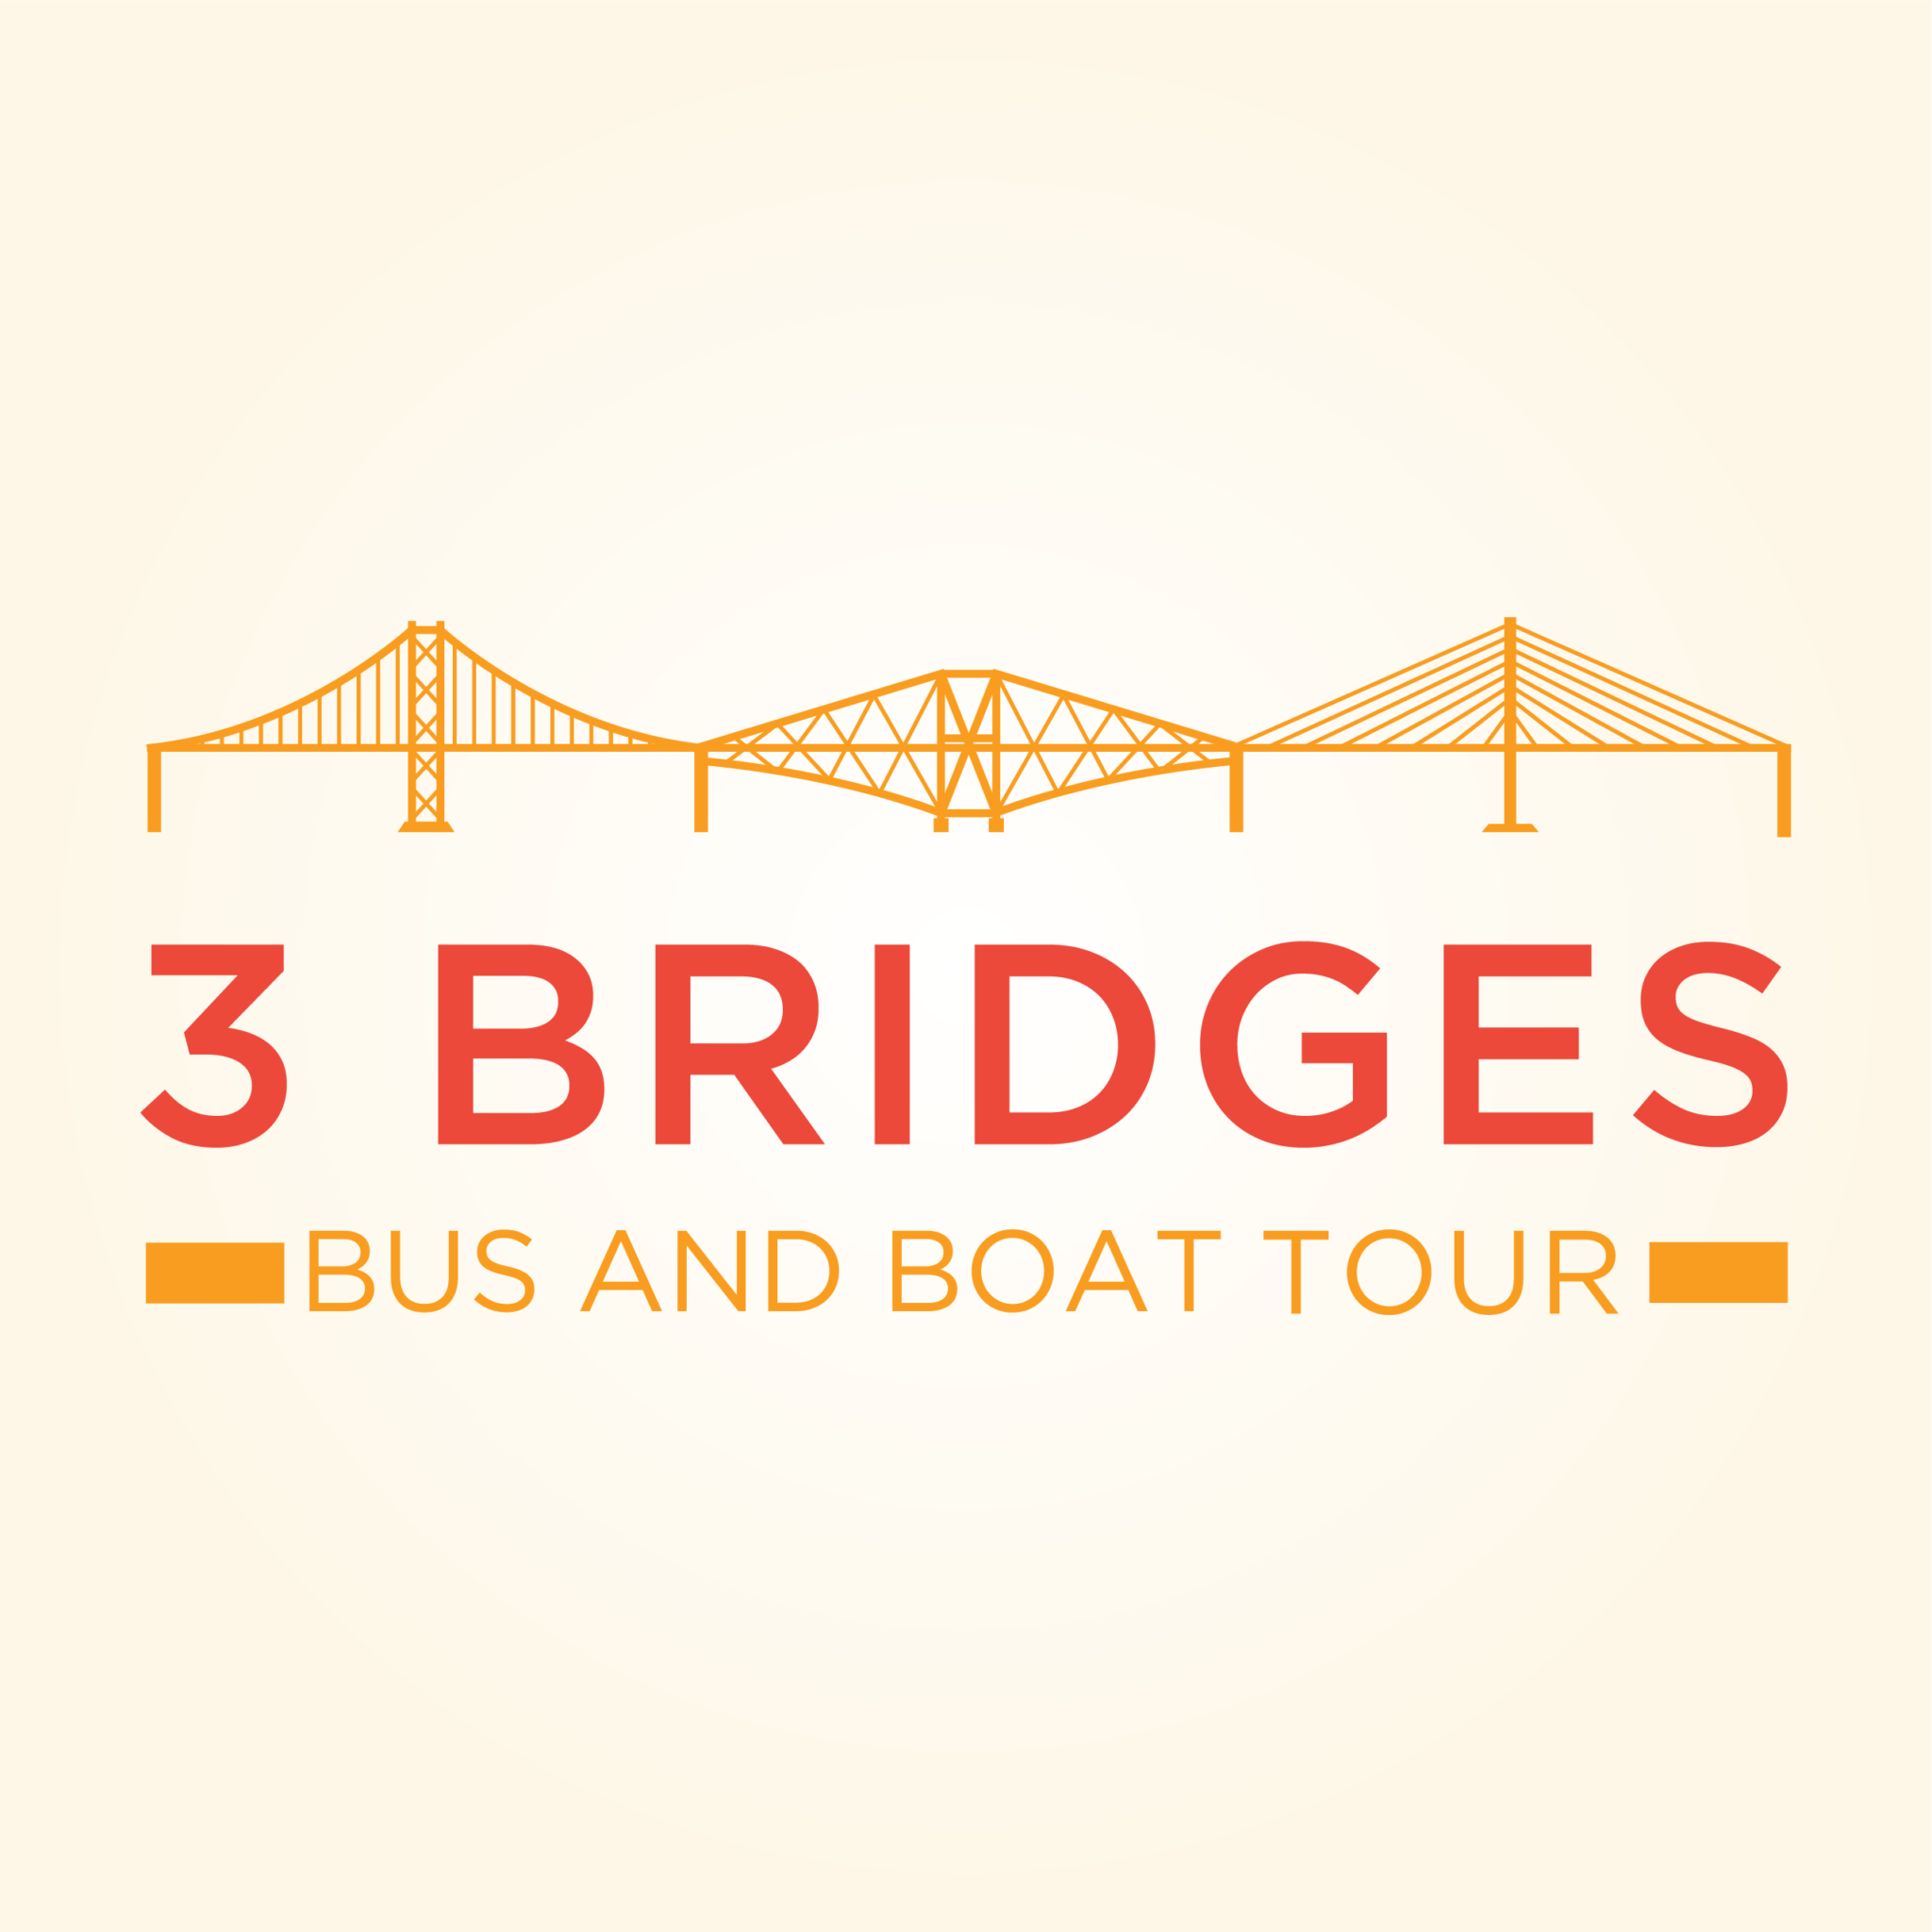 3 bridges bus tour edinburgh